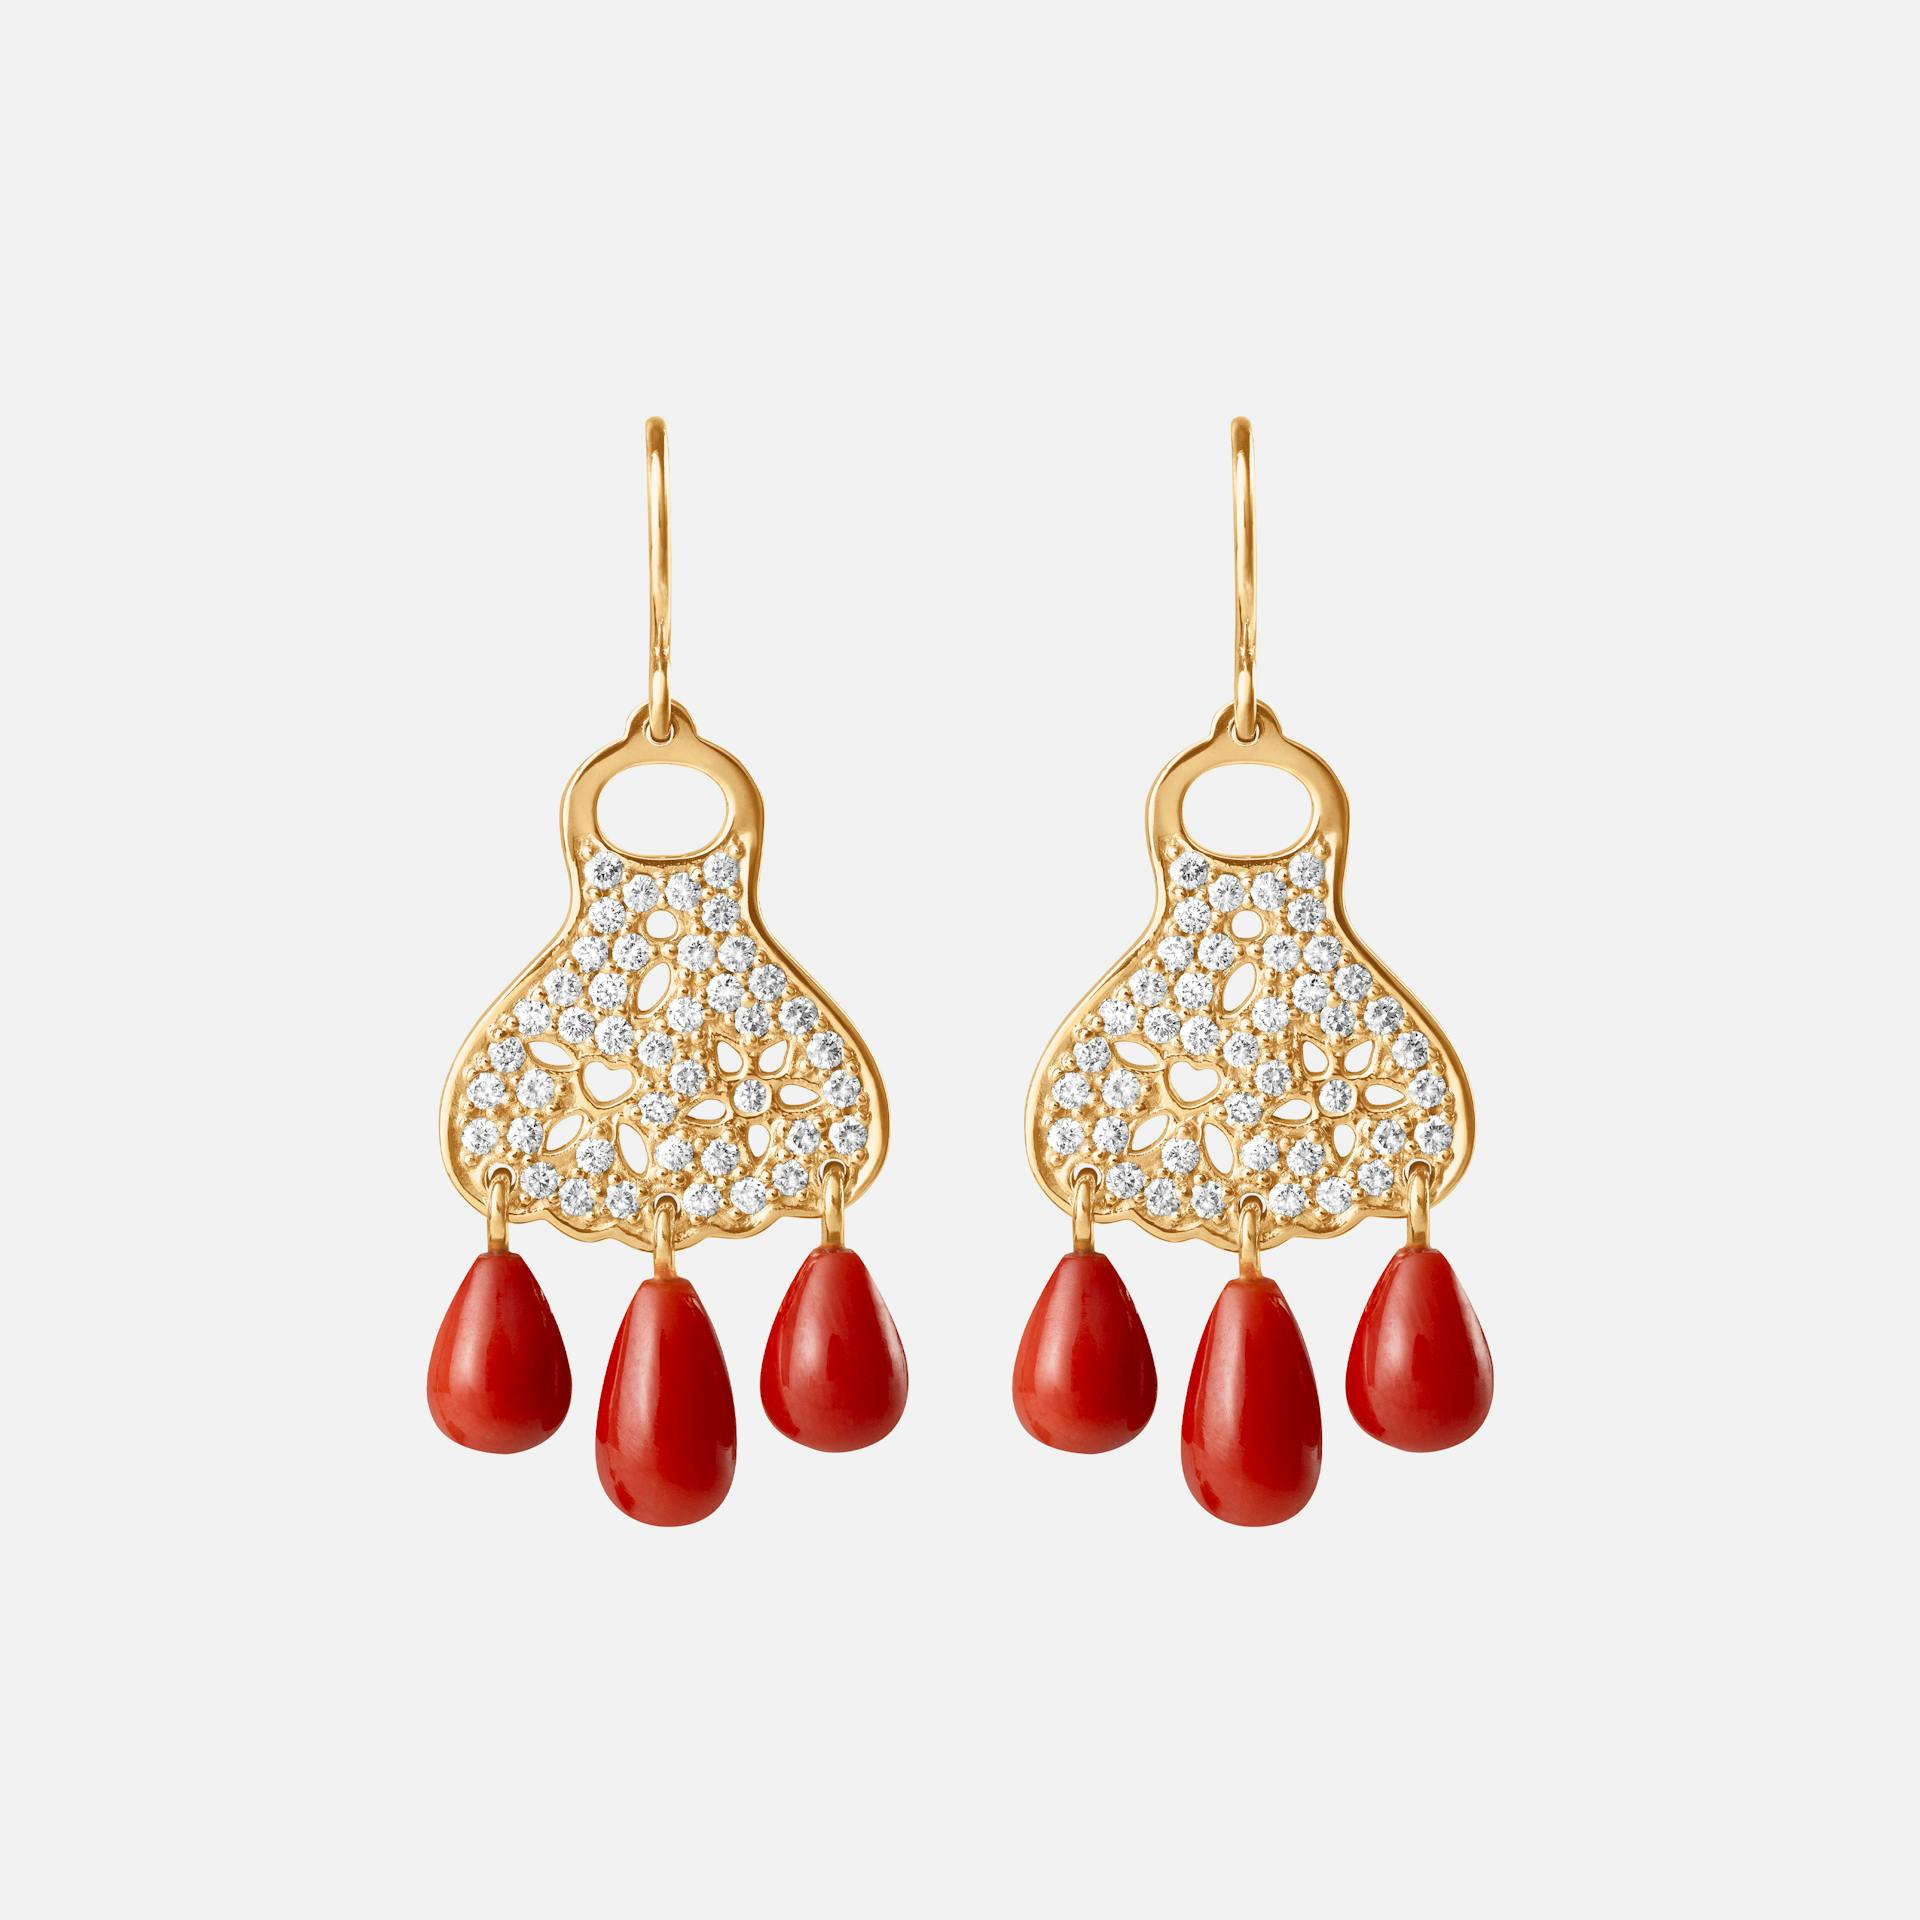 Lace øreringe i gult guld med diamanter og rød koral | Ole Lynggaard Copenhagen